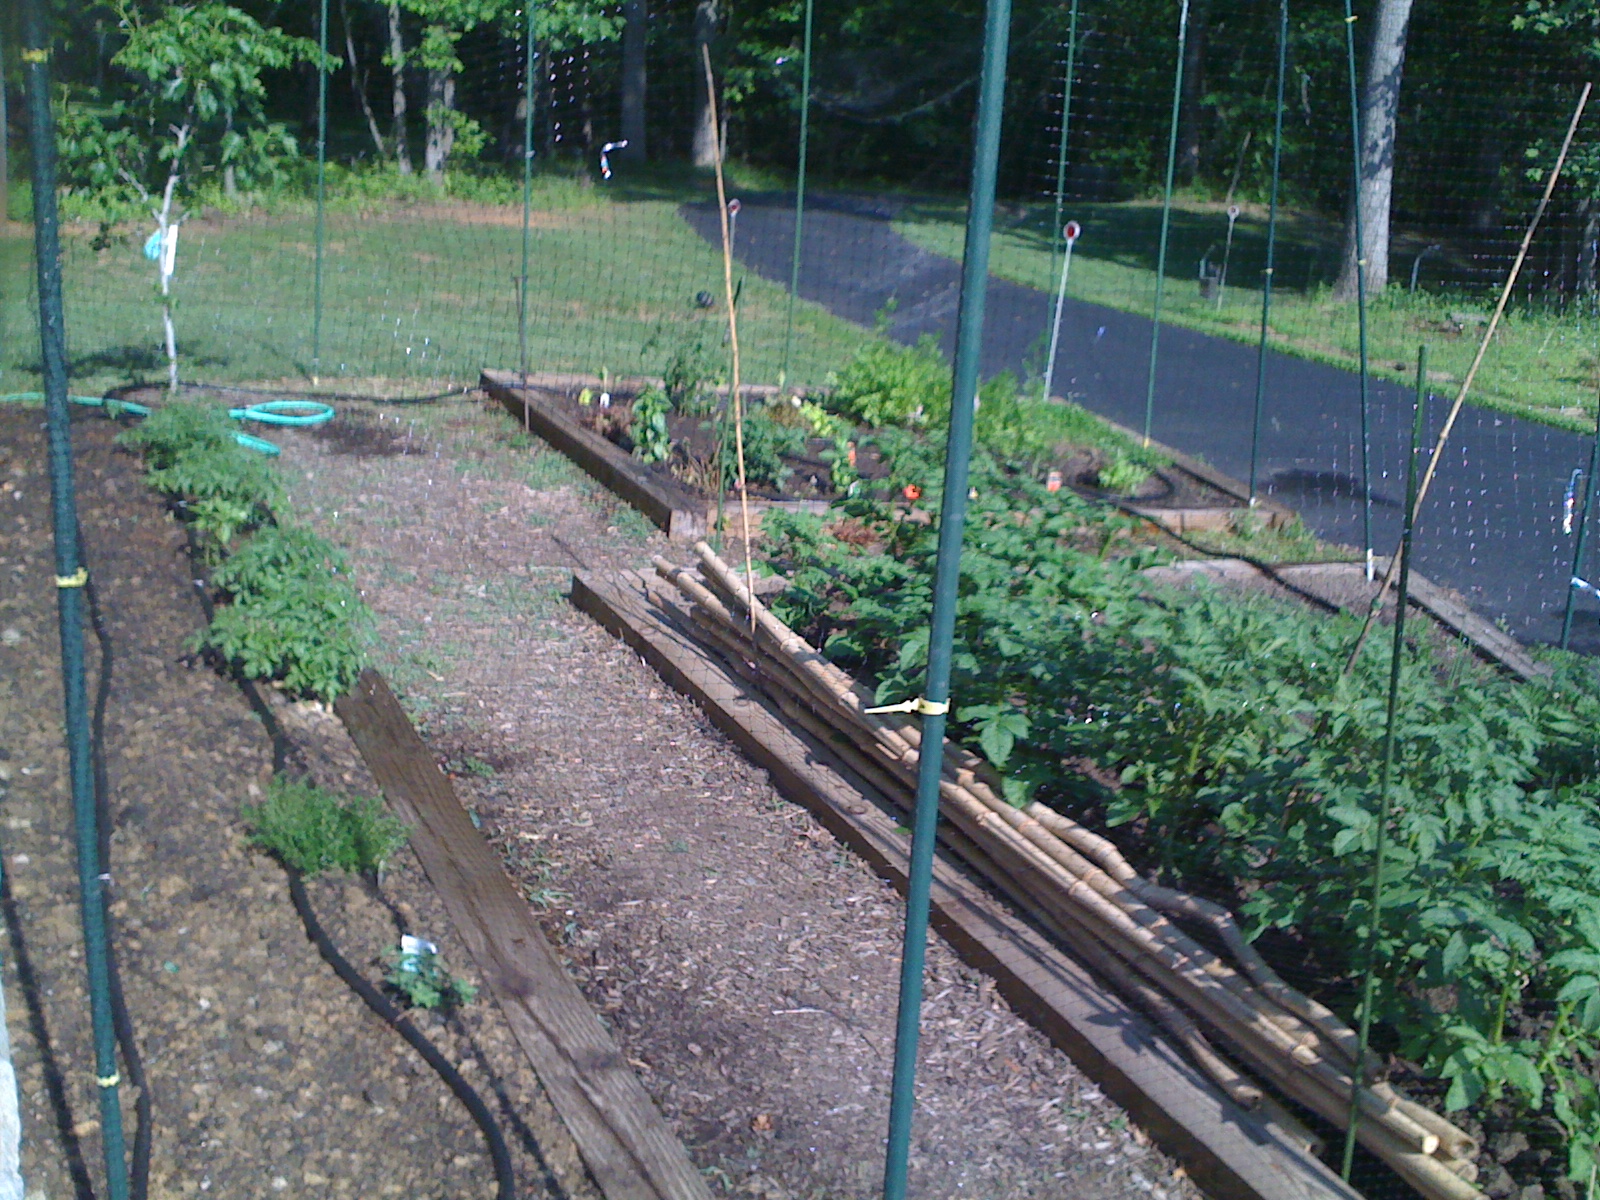 2010 vegetable garden beds